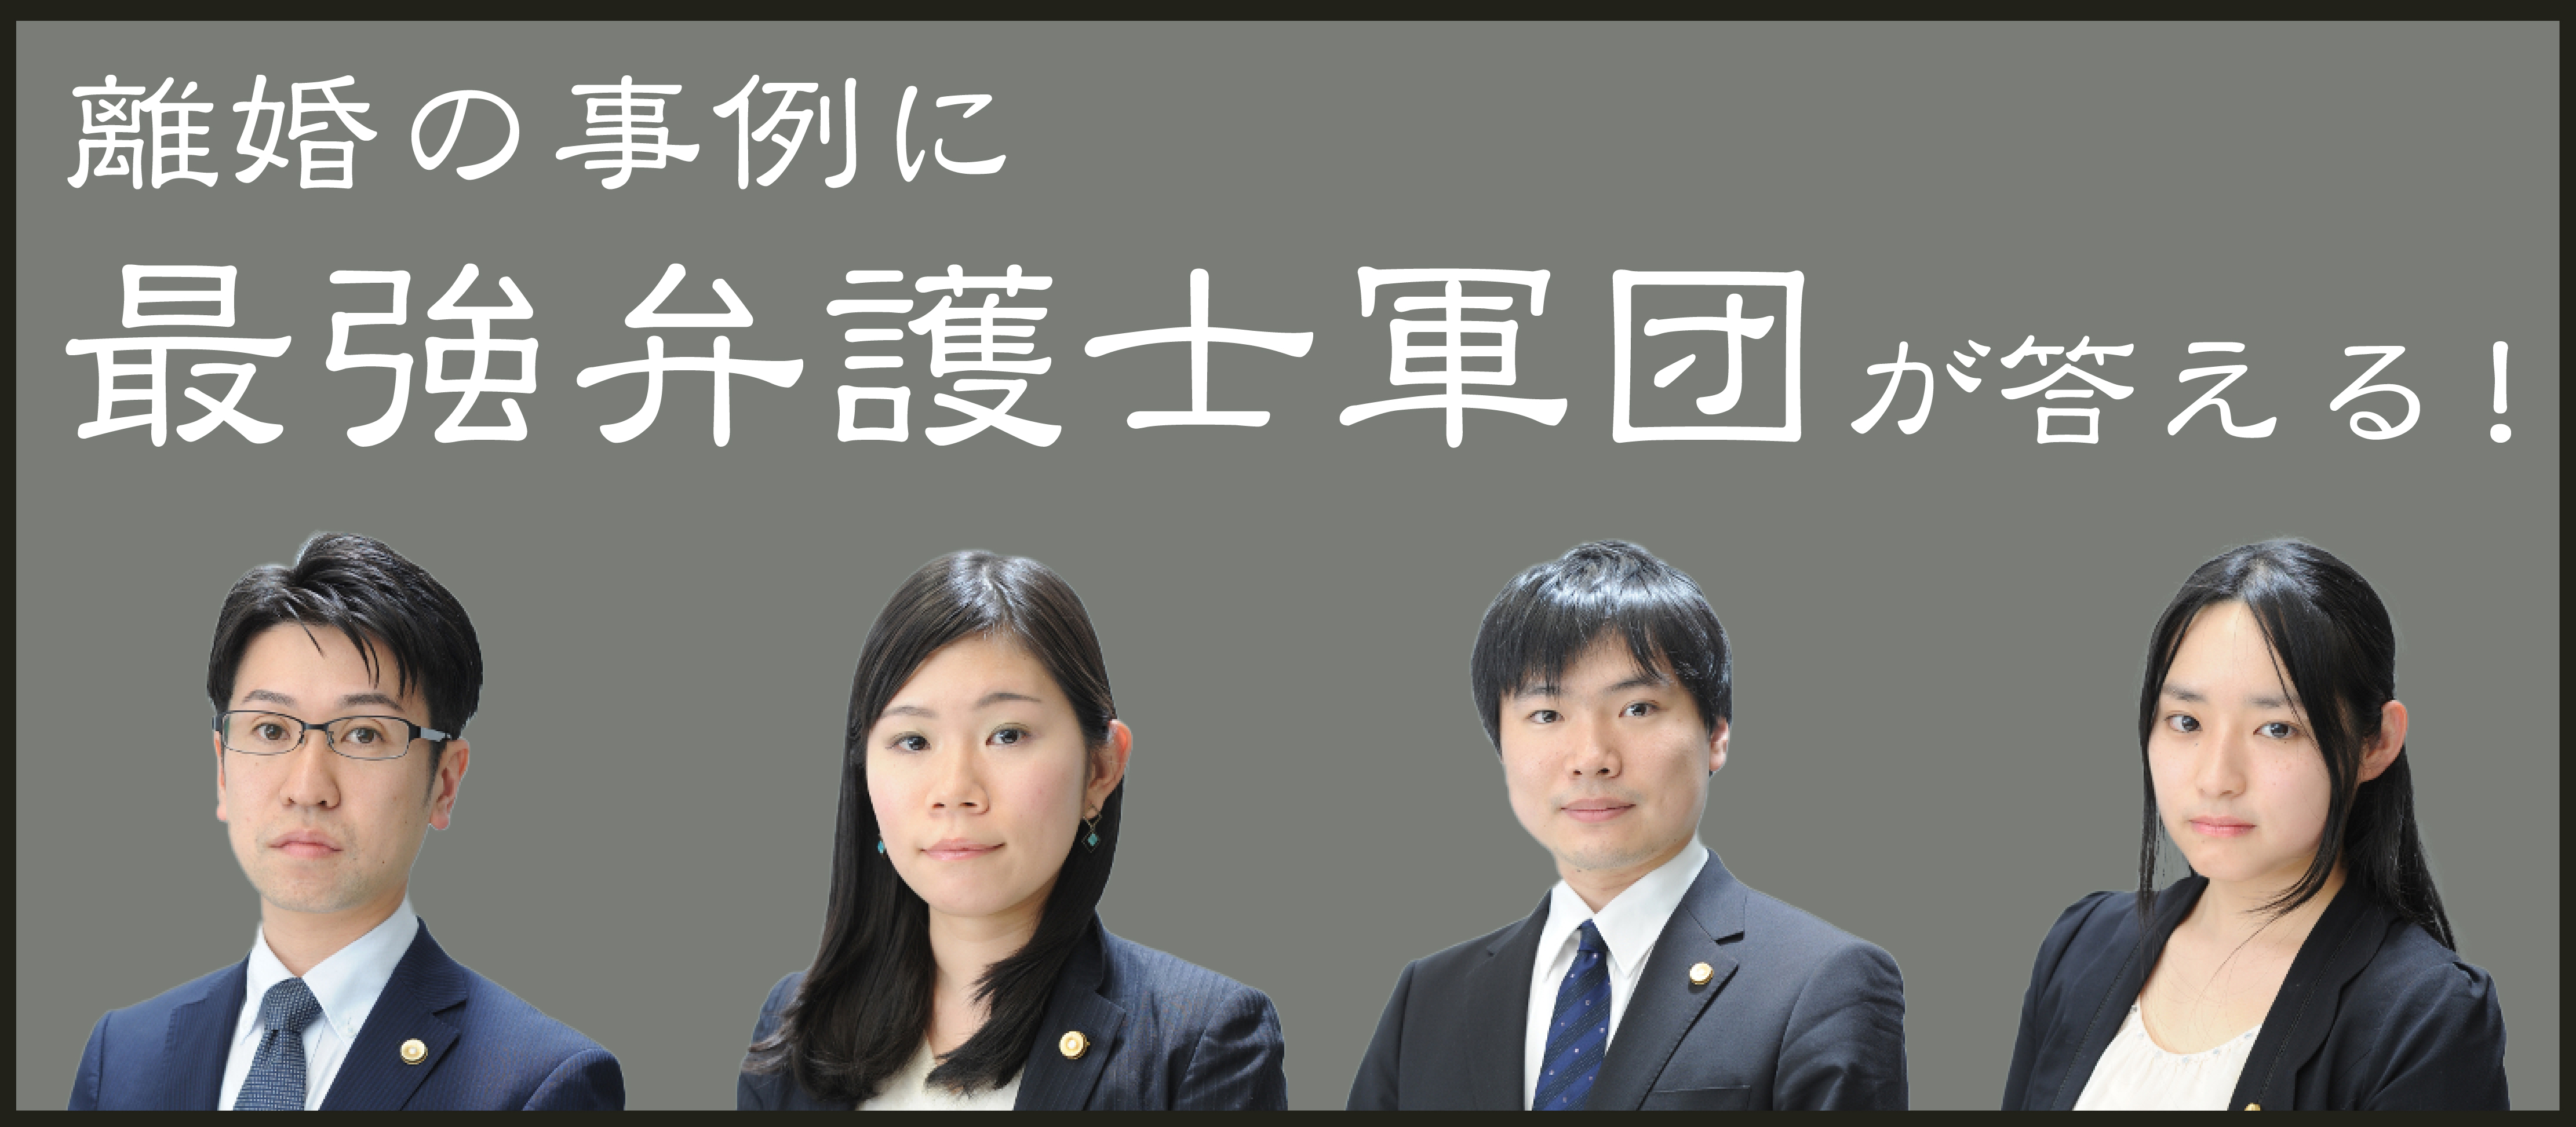 弁護士が答える 家事もしない無職夫と離婚したい 養育費はもらえますか 神奈川県在住で契約社員34歳女性の場合 シン家族離婚相談